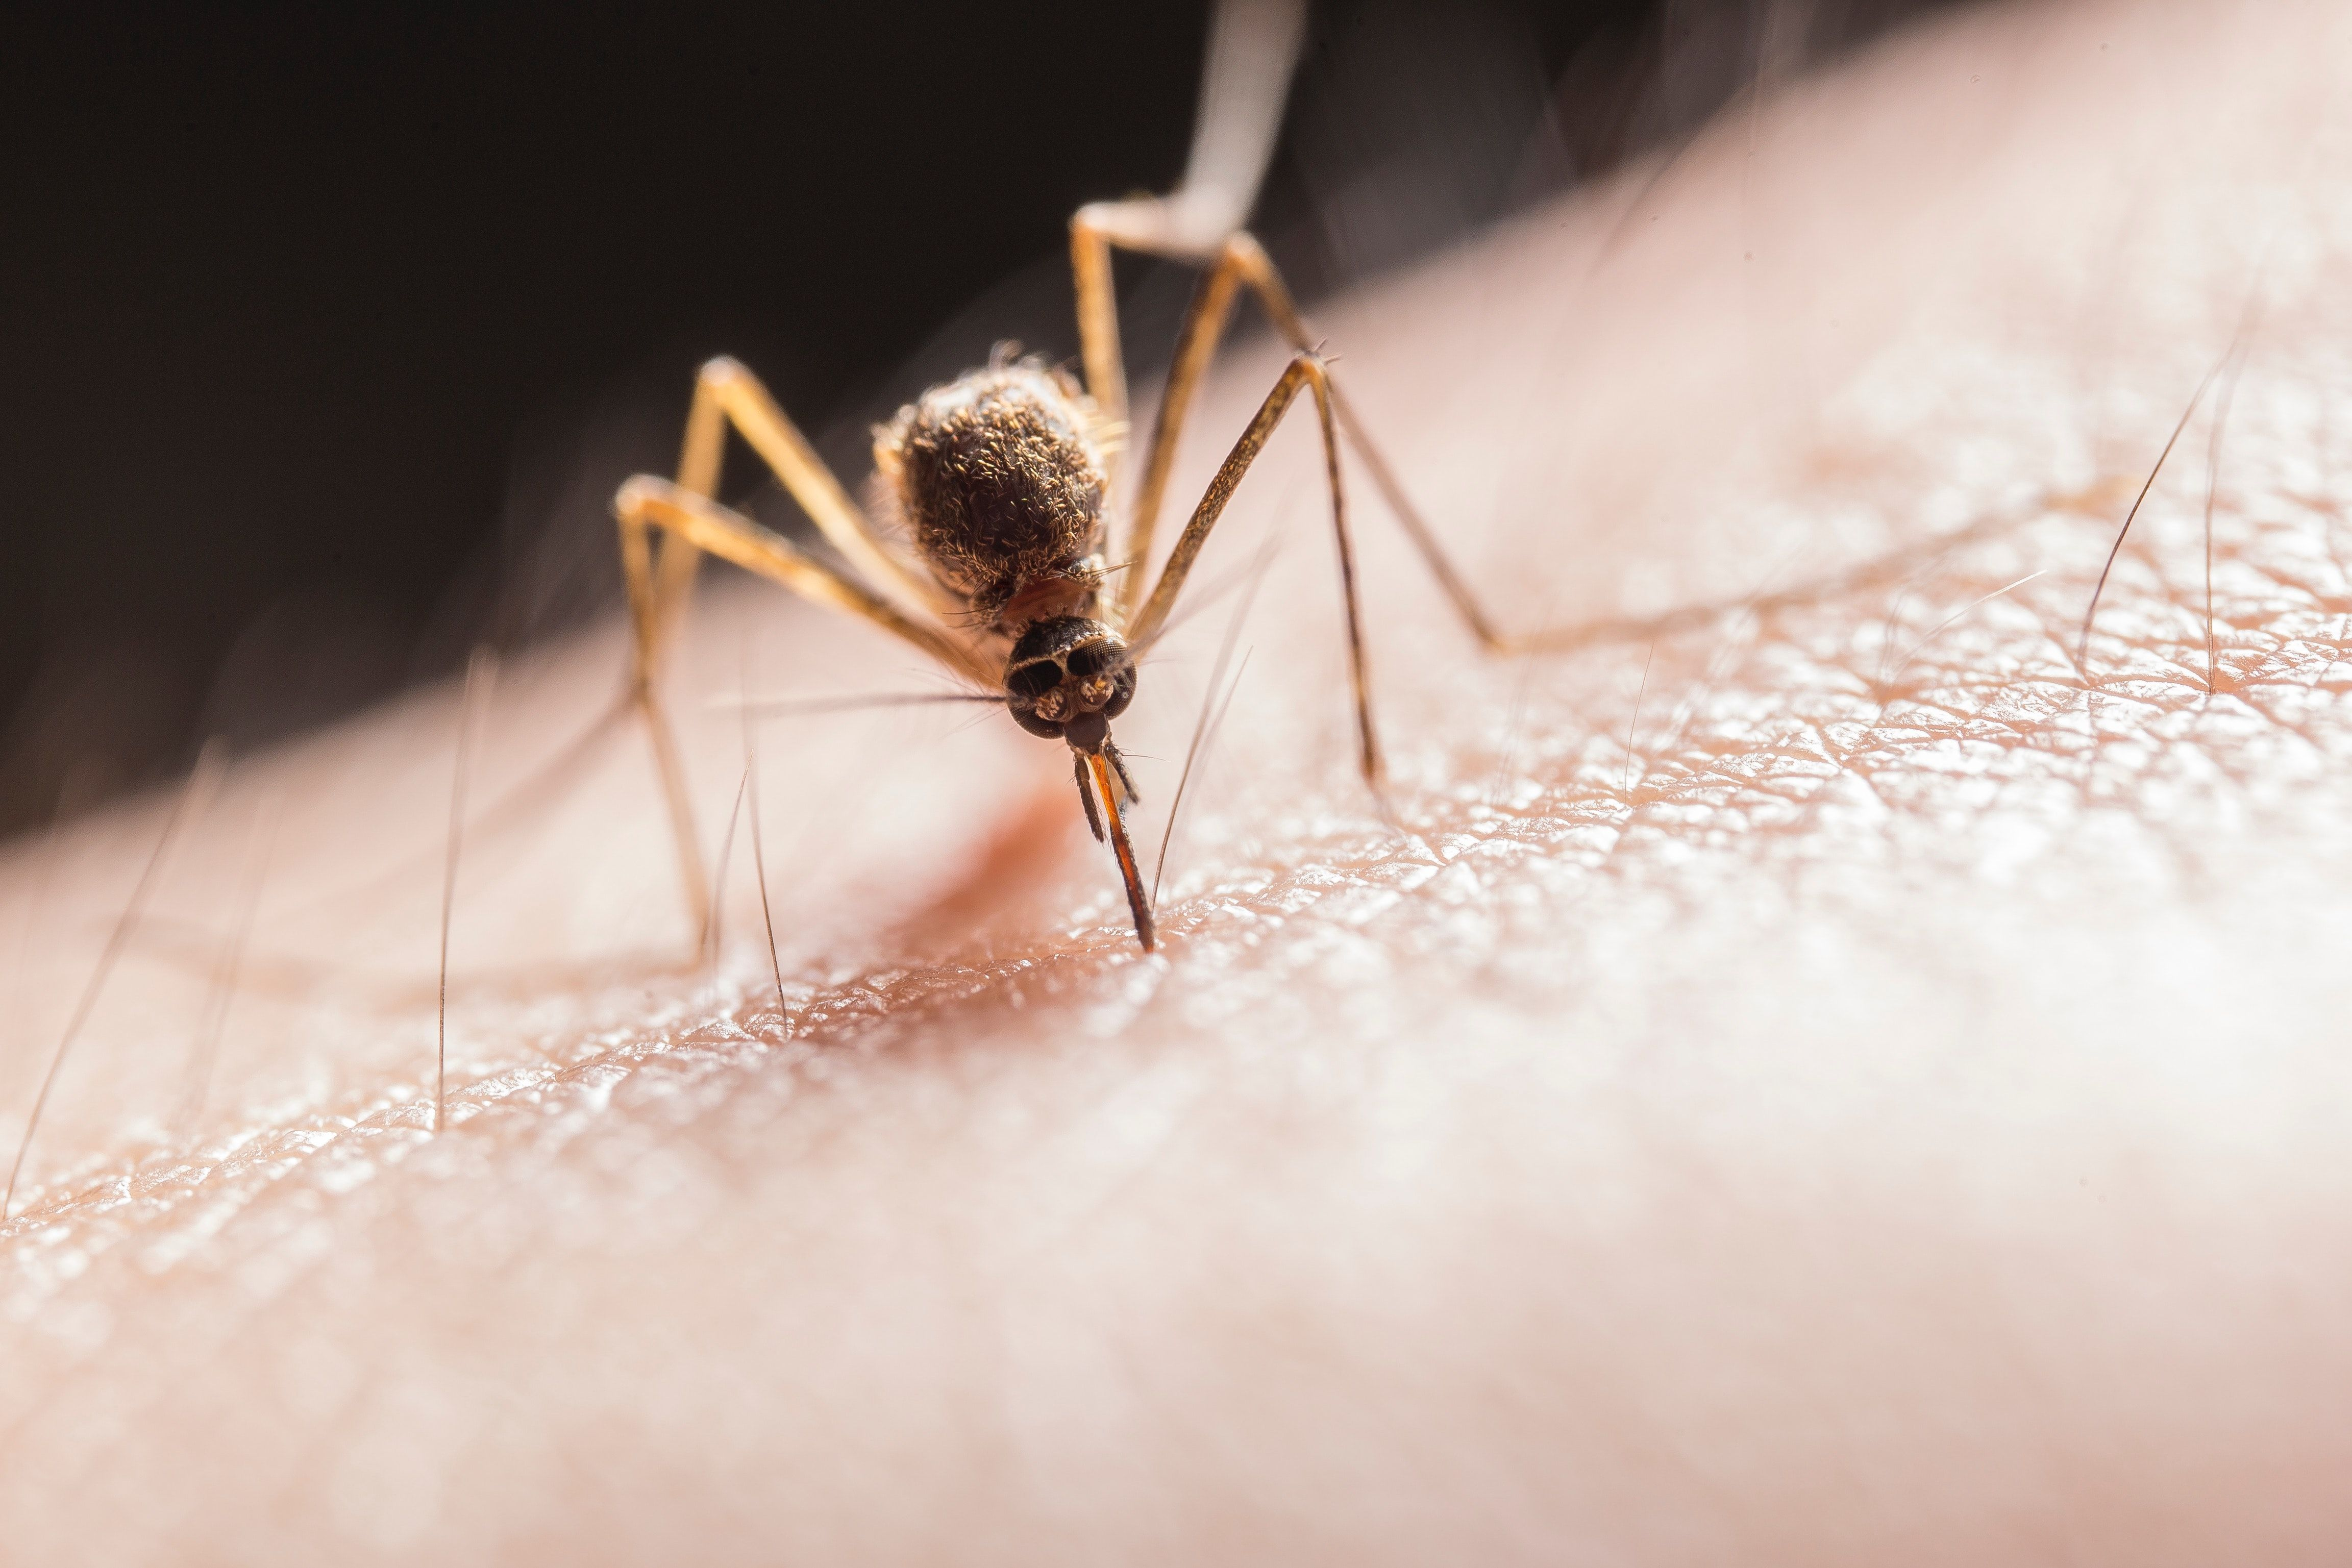 Волинська лікарка дала поради, як рятуватися від укусів комарів